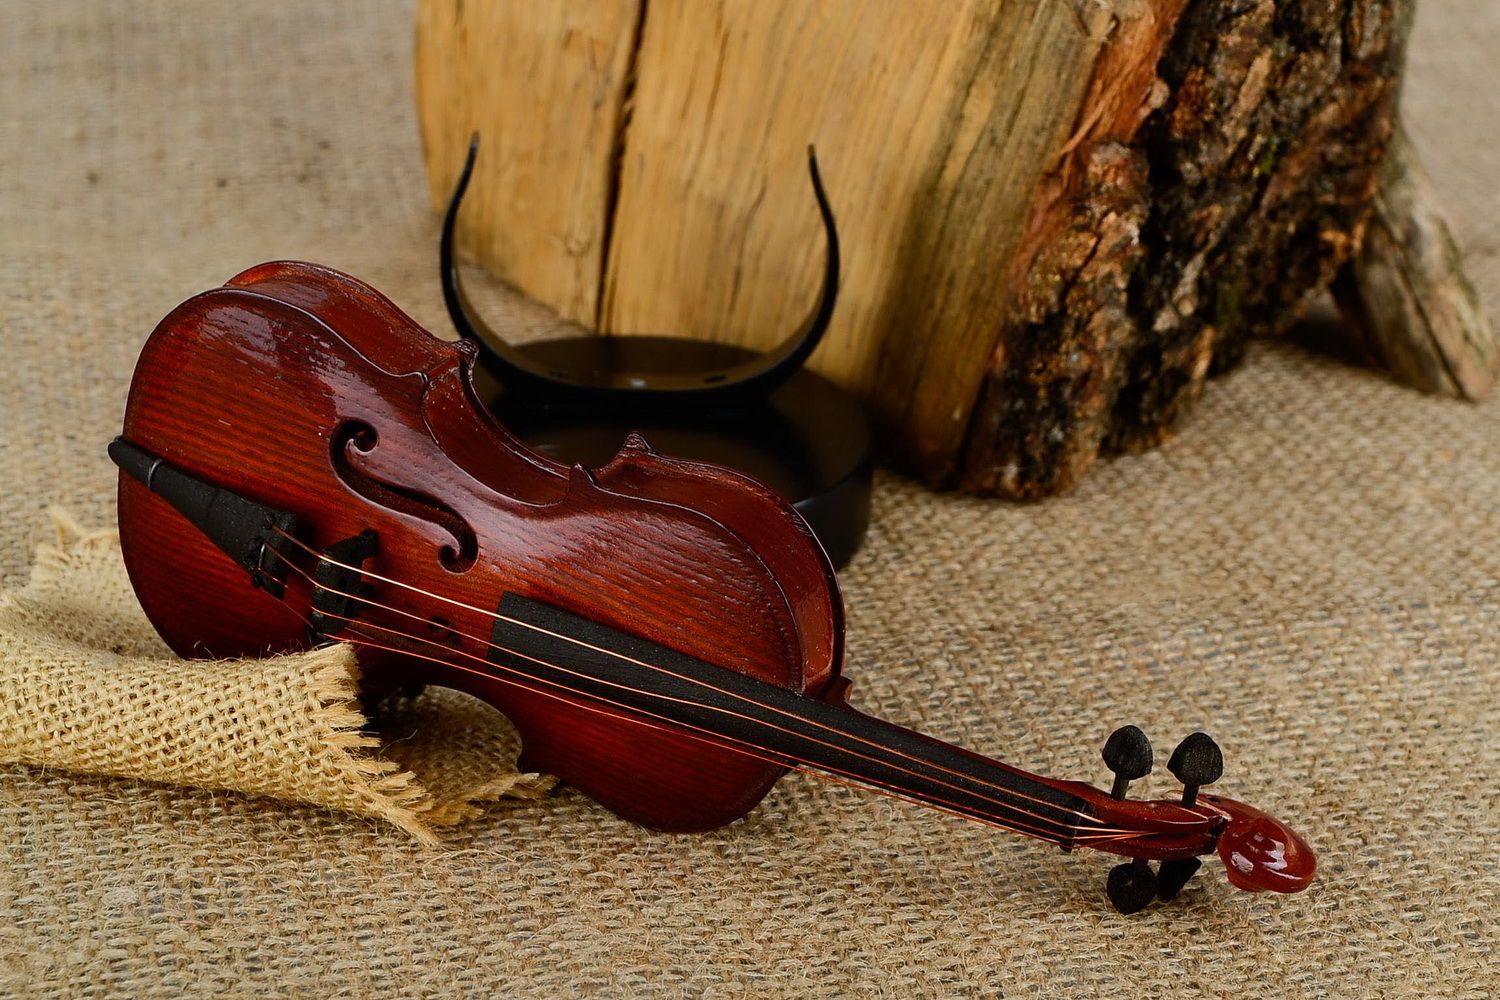 Decorative wooden violin photo 1